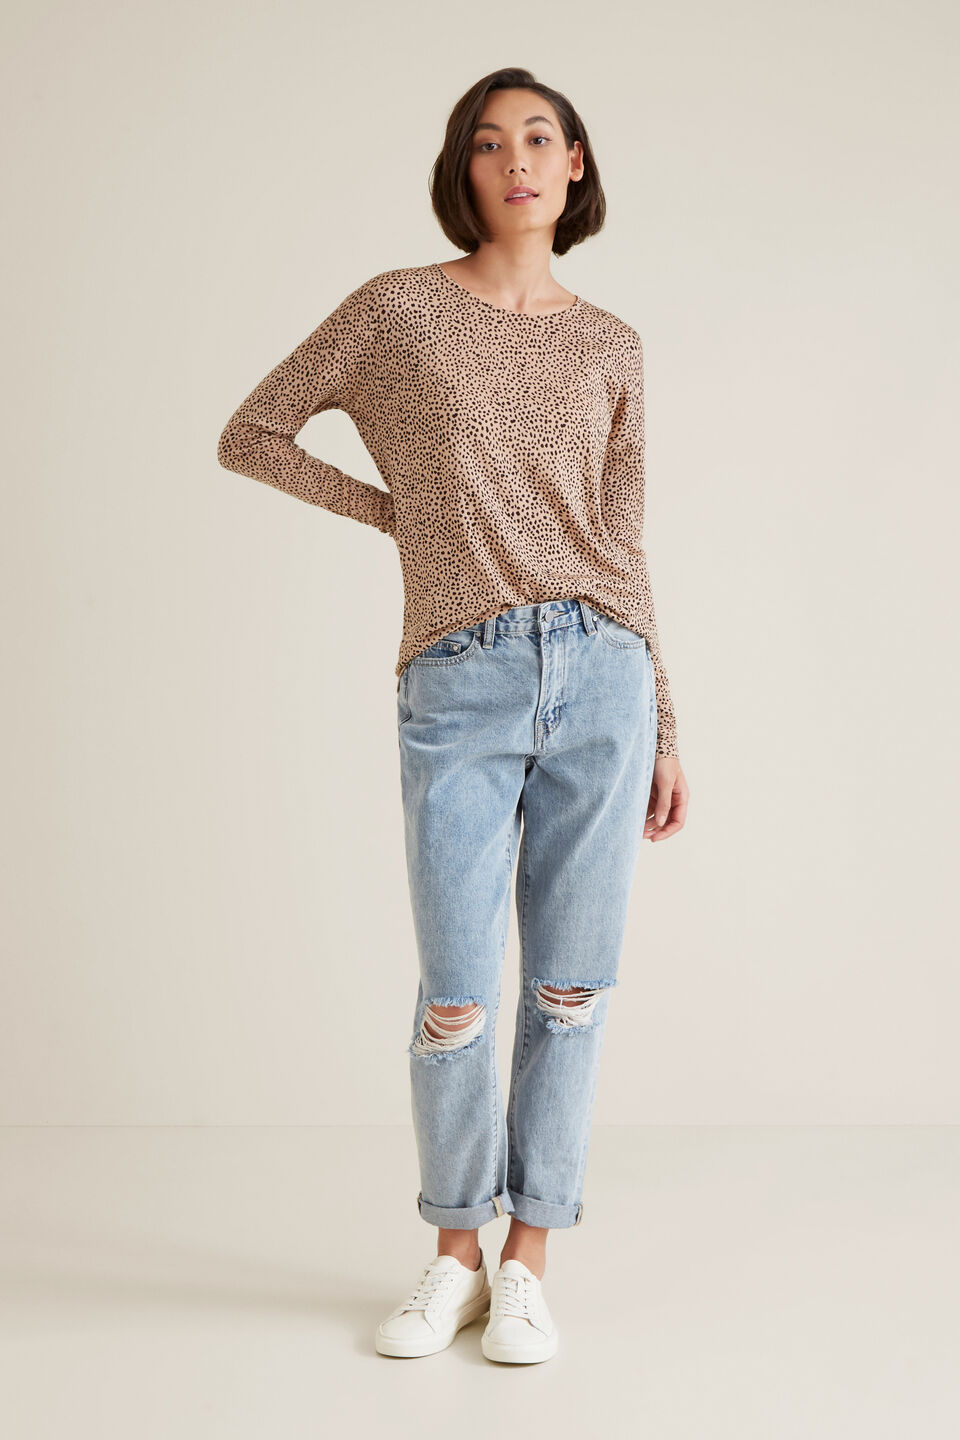 Ocelot Sweater  